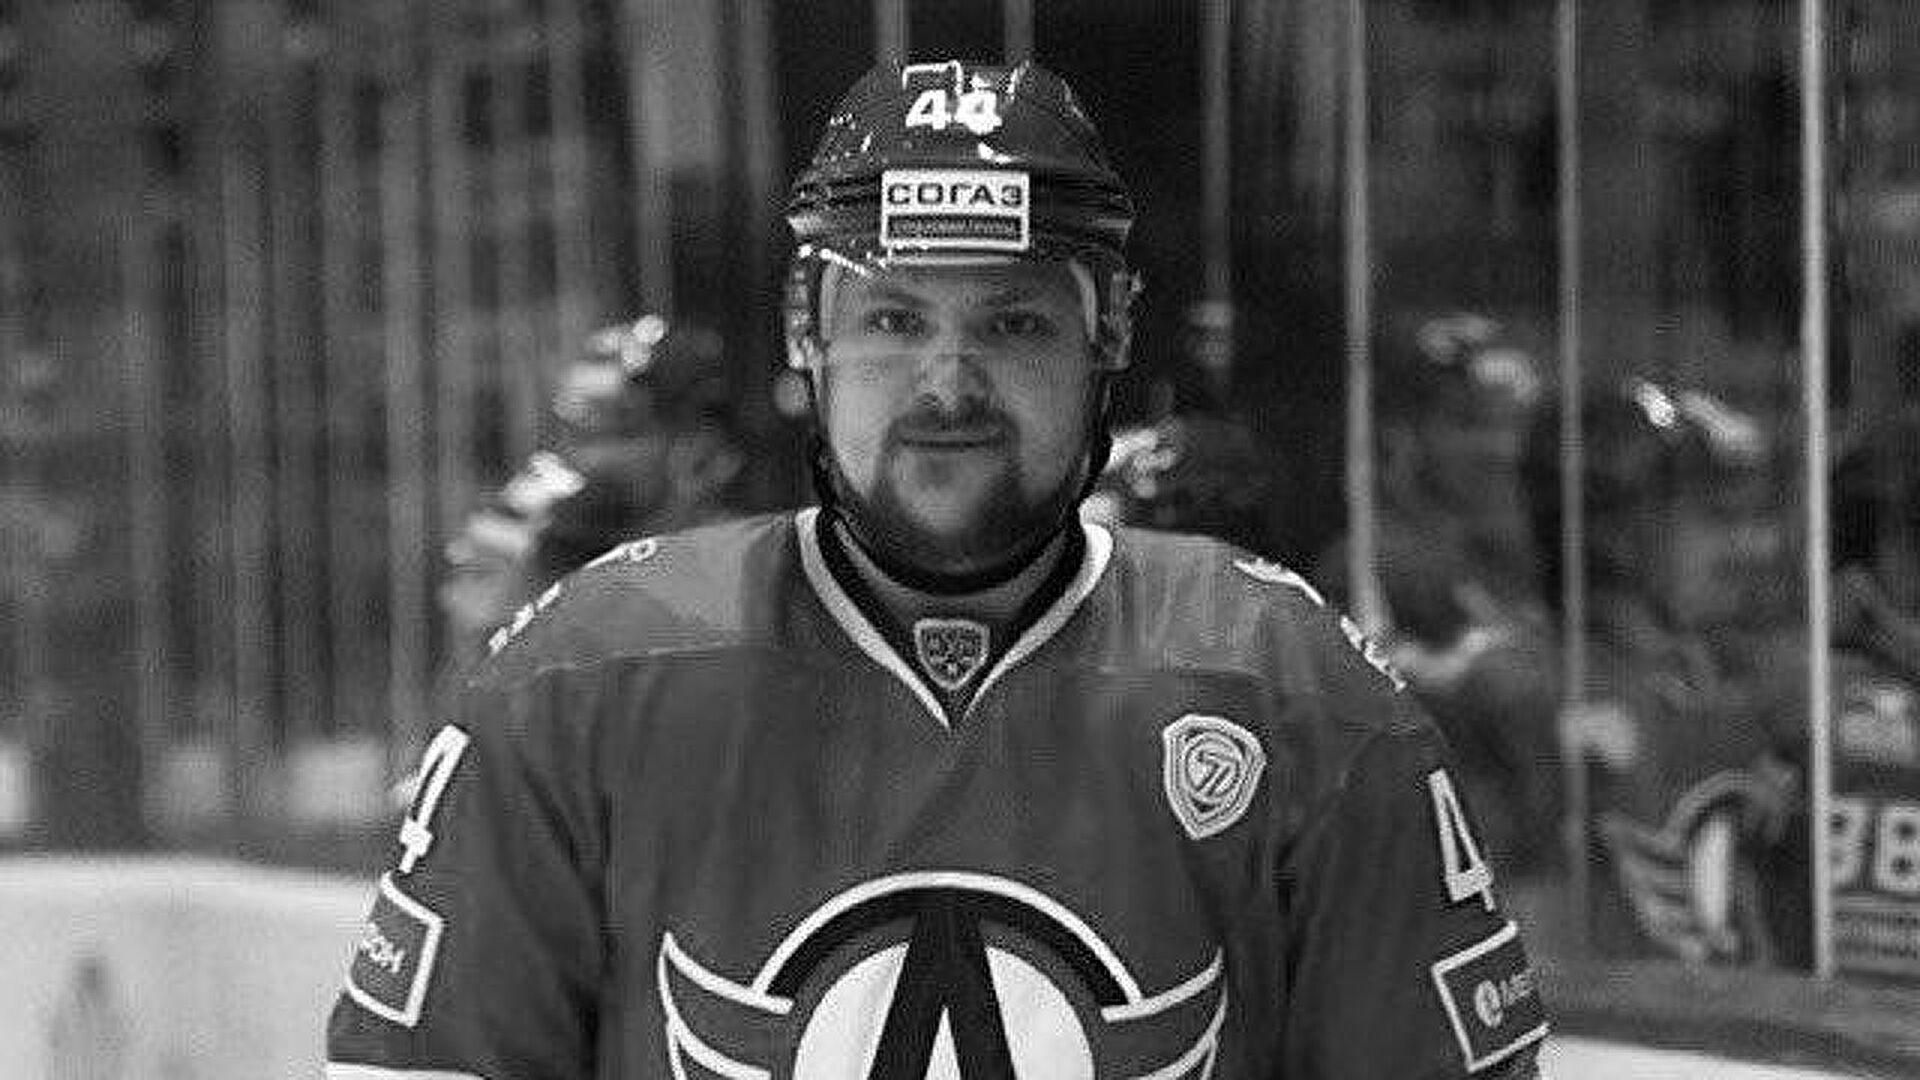 Колишній хокеїст Донбаса Владислав Єгін помер - що відомо, кар'єра